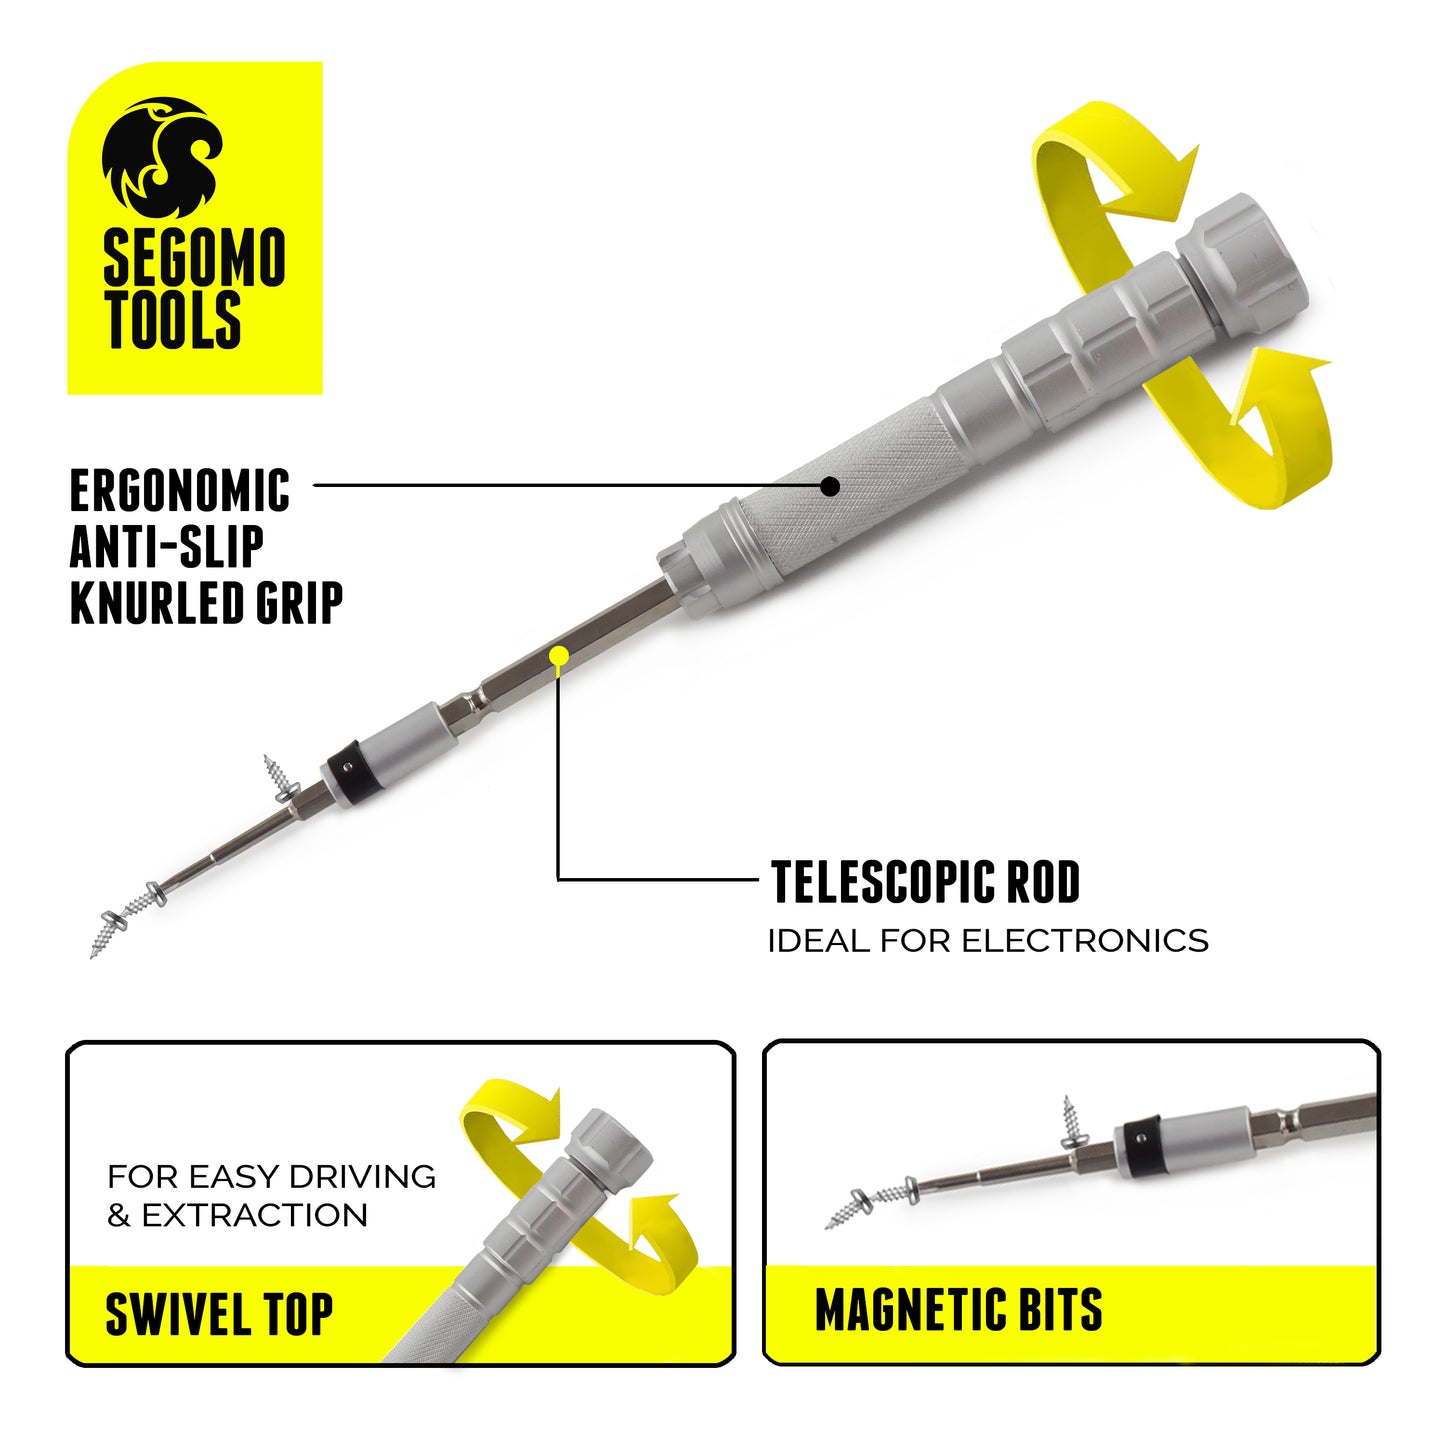 Segomo Tools Kit de réparation de tournevis pour bijoux, électronique de précision, ordinateur portable, téléphone portable, 17 pièces-JWSD1 